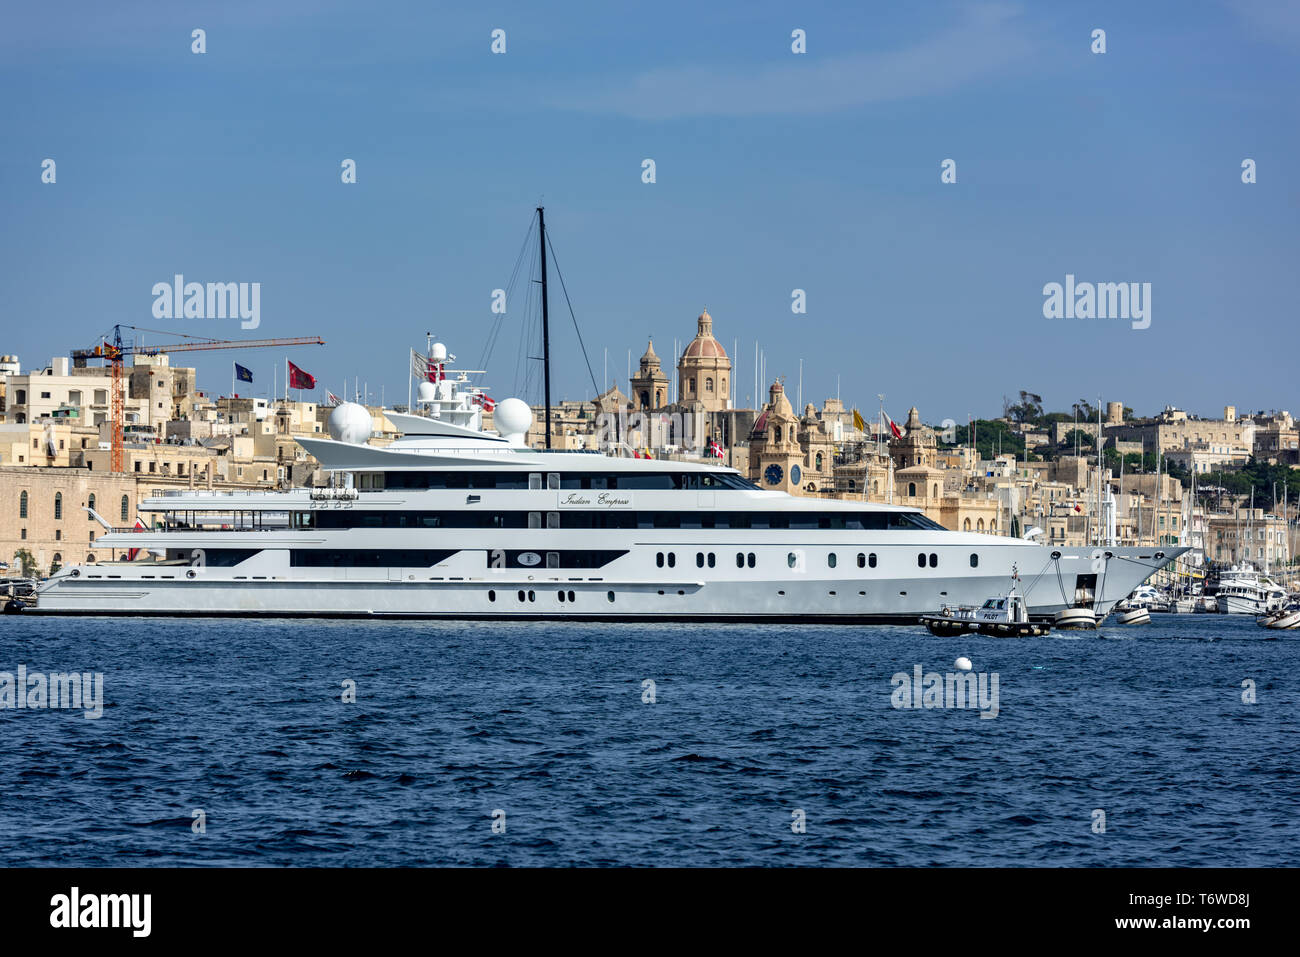 Le yacht de luxe Indian Empress de 95 mètres dans le Grand Port de Birgu, Malte avec les dômes des églises de St Anne et de St Philip en arrière-plan Banque D'Images